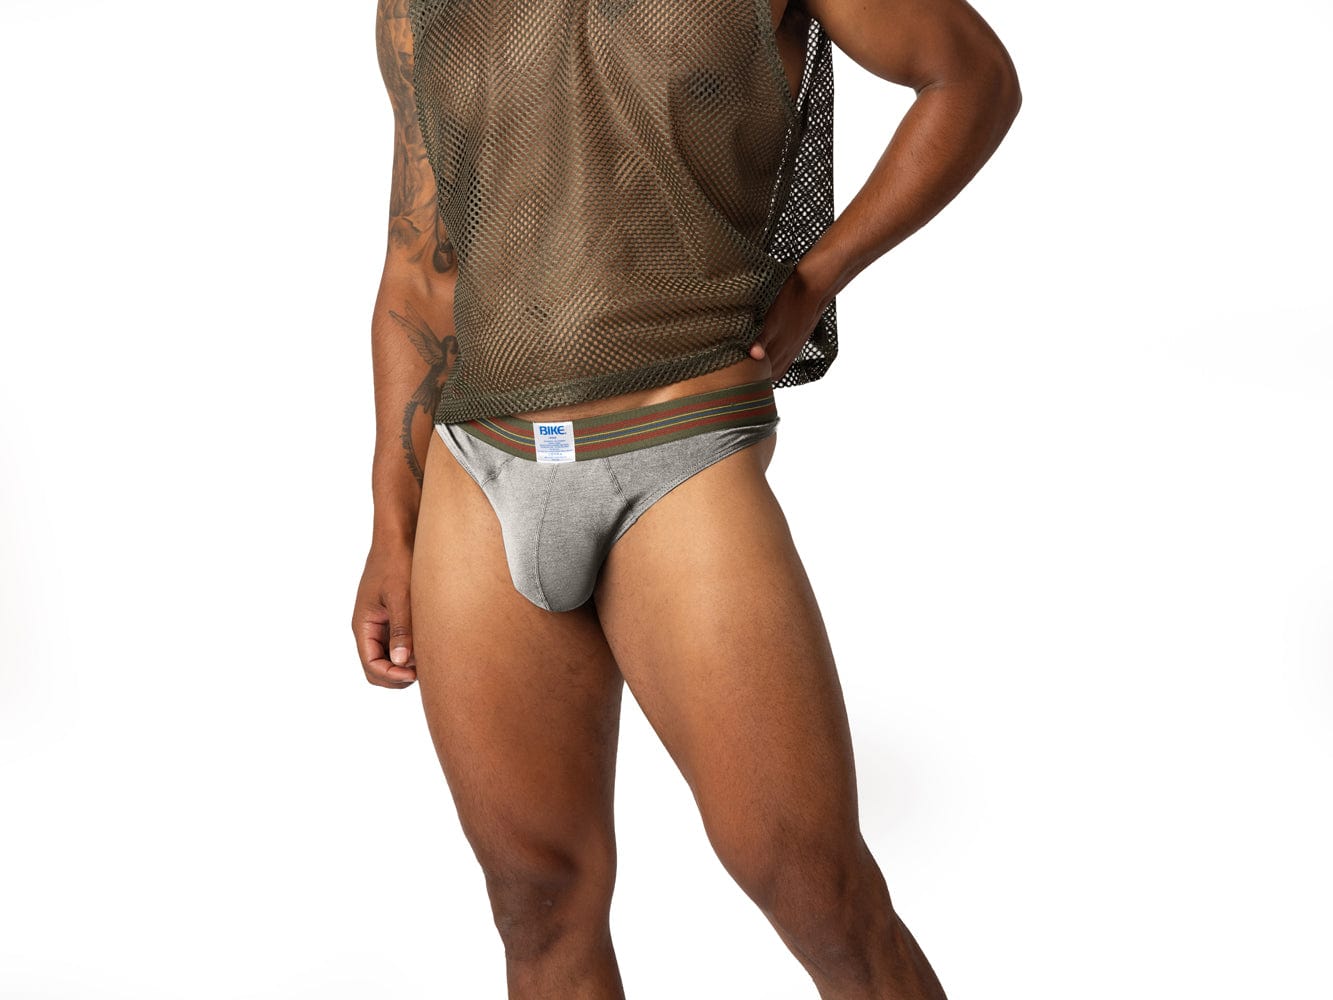 Bike Athletic Men's Brief Underwear 2-Pack White/Grey BAS307WHG at